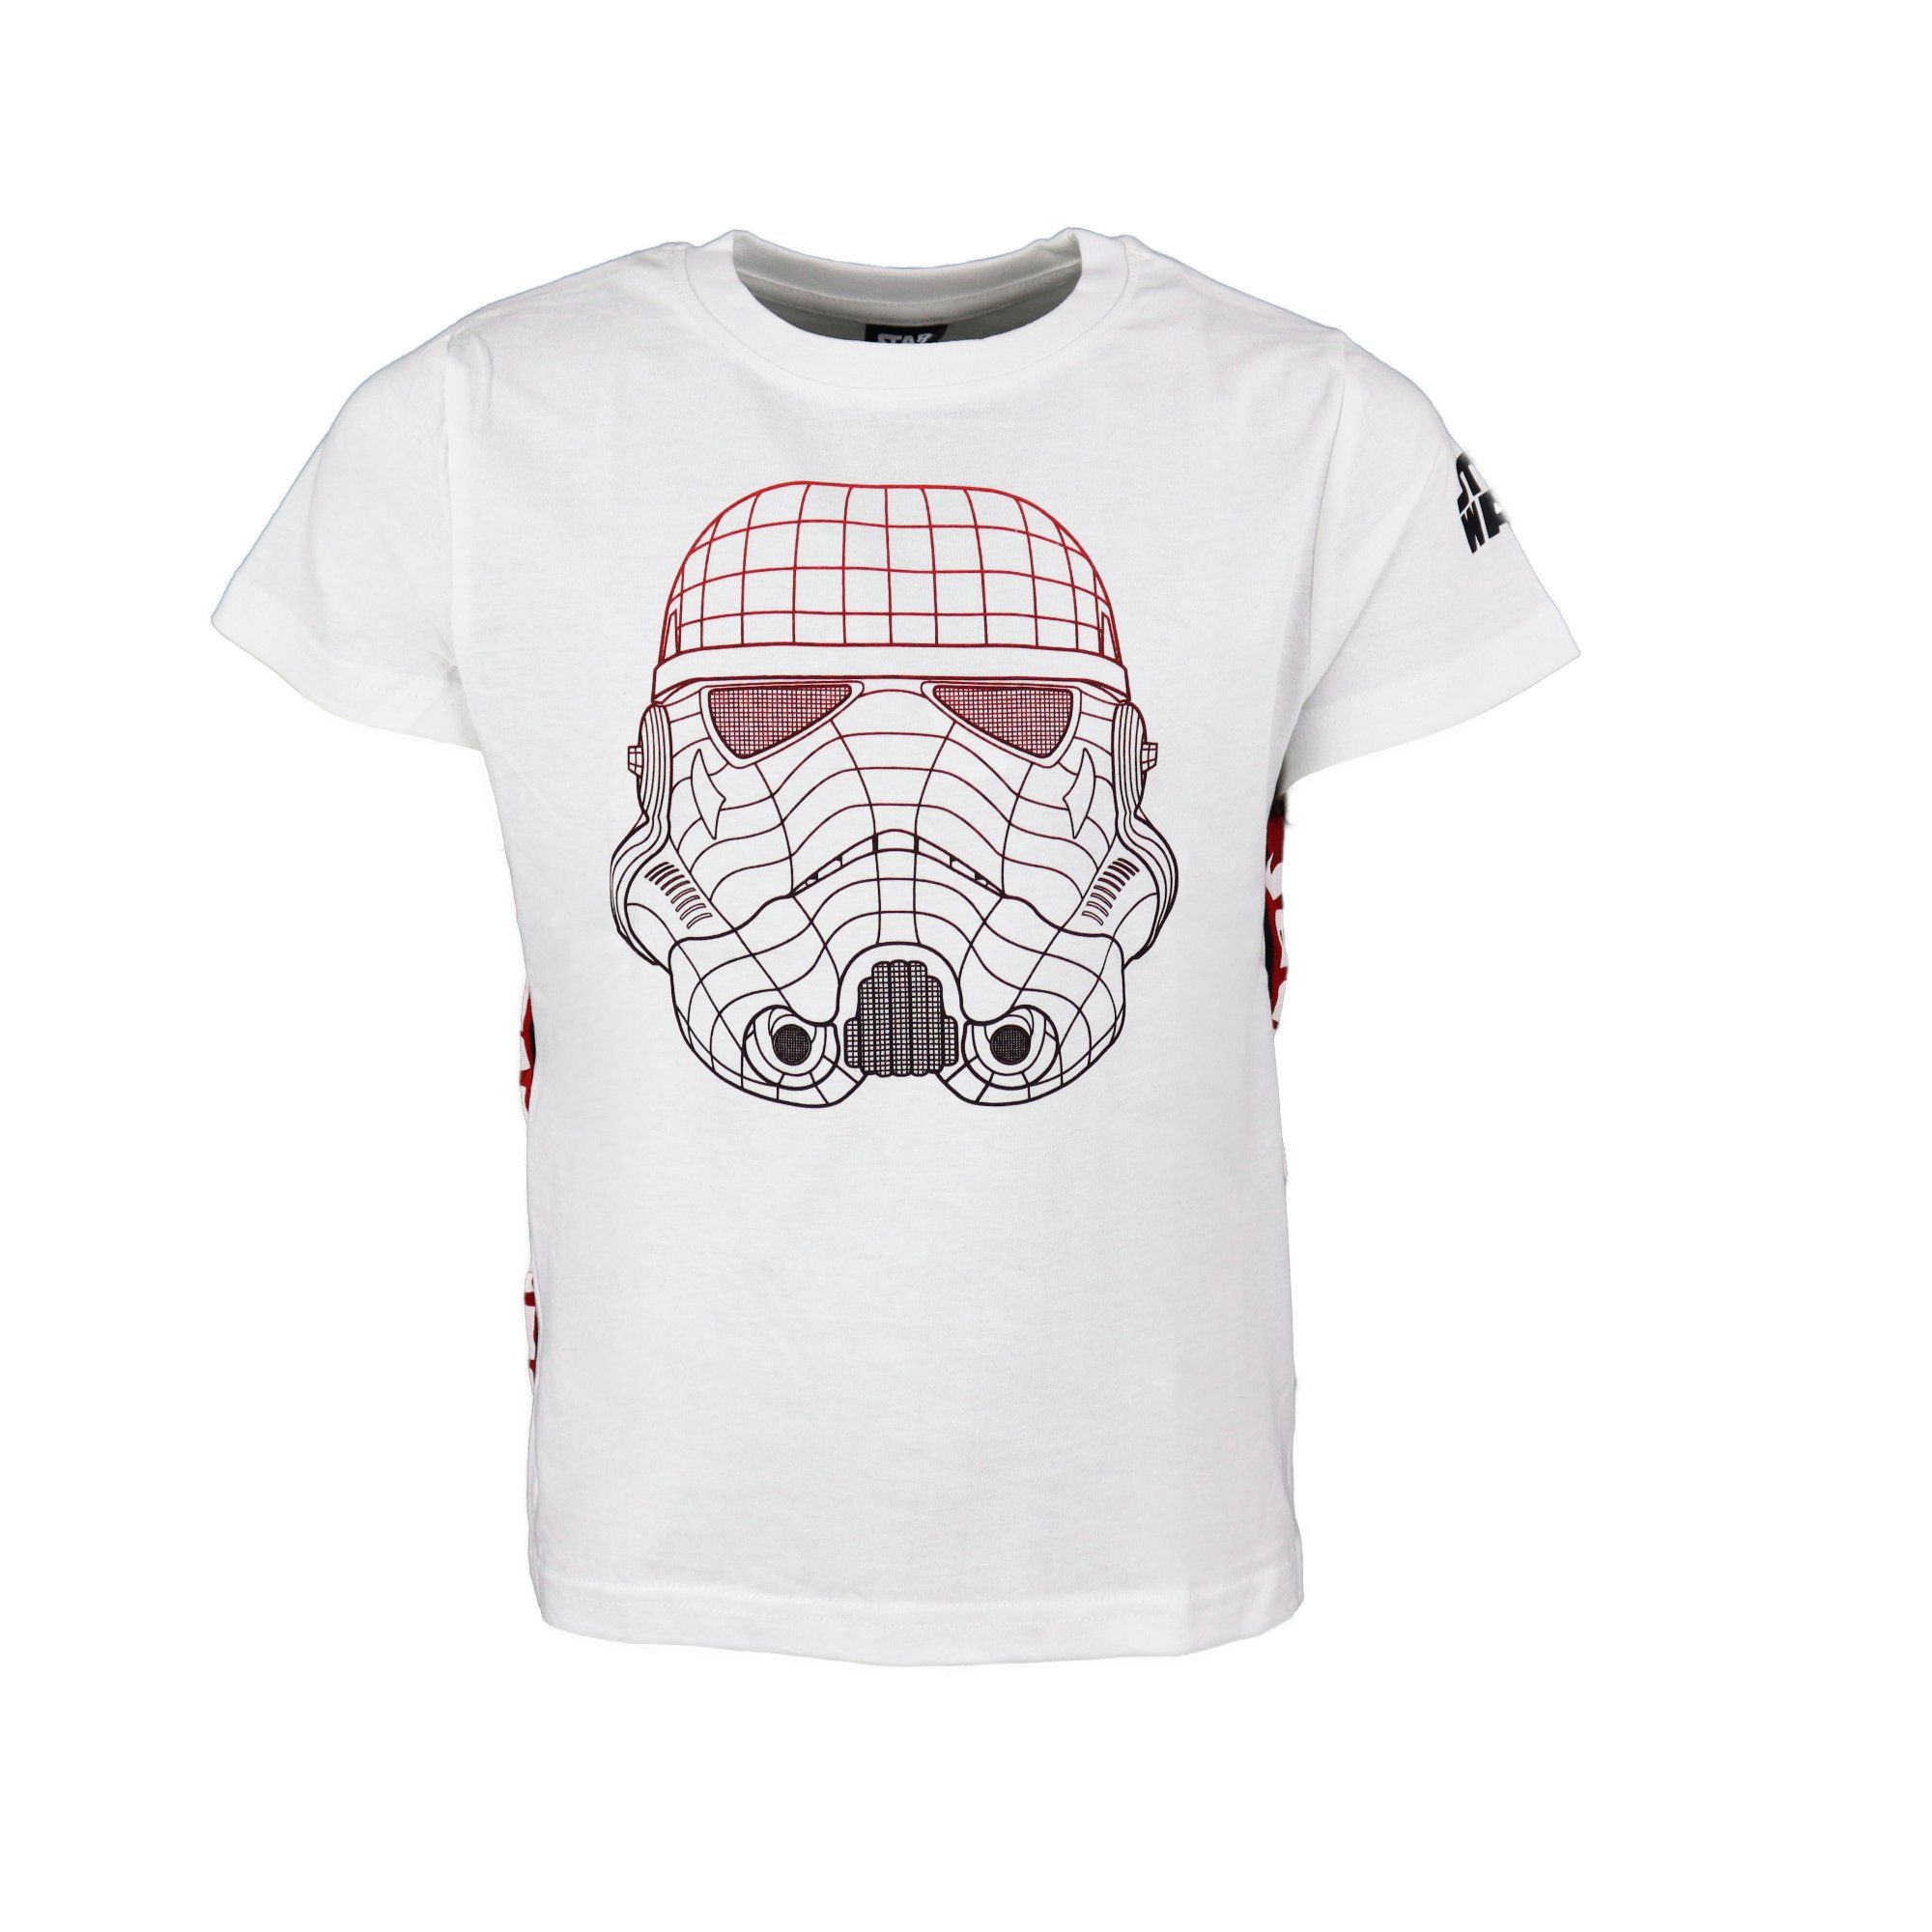 Disney Print-Shirt Star Wars Storm Trooper Kinder Jungen T-Shirt Gr. 134 bis 164, 100% Baumwolle, Weiß